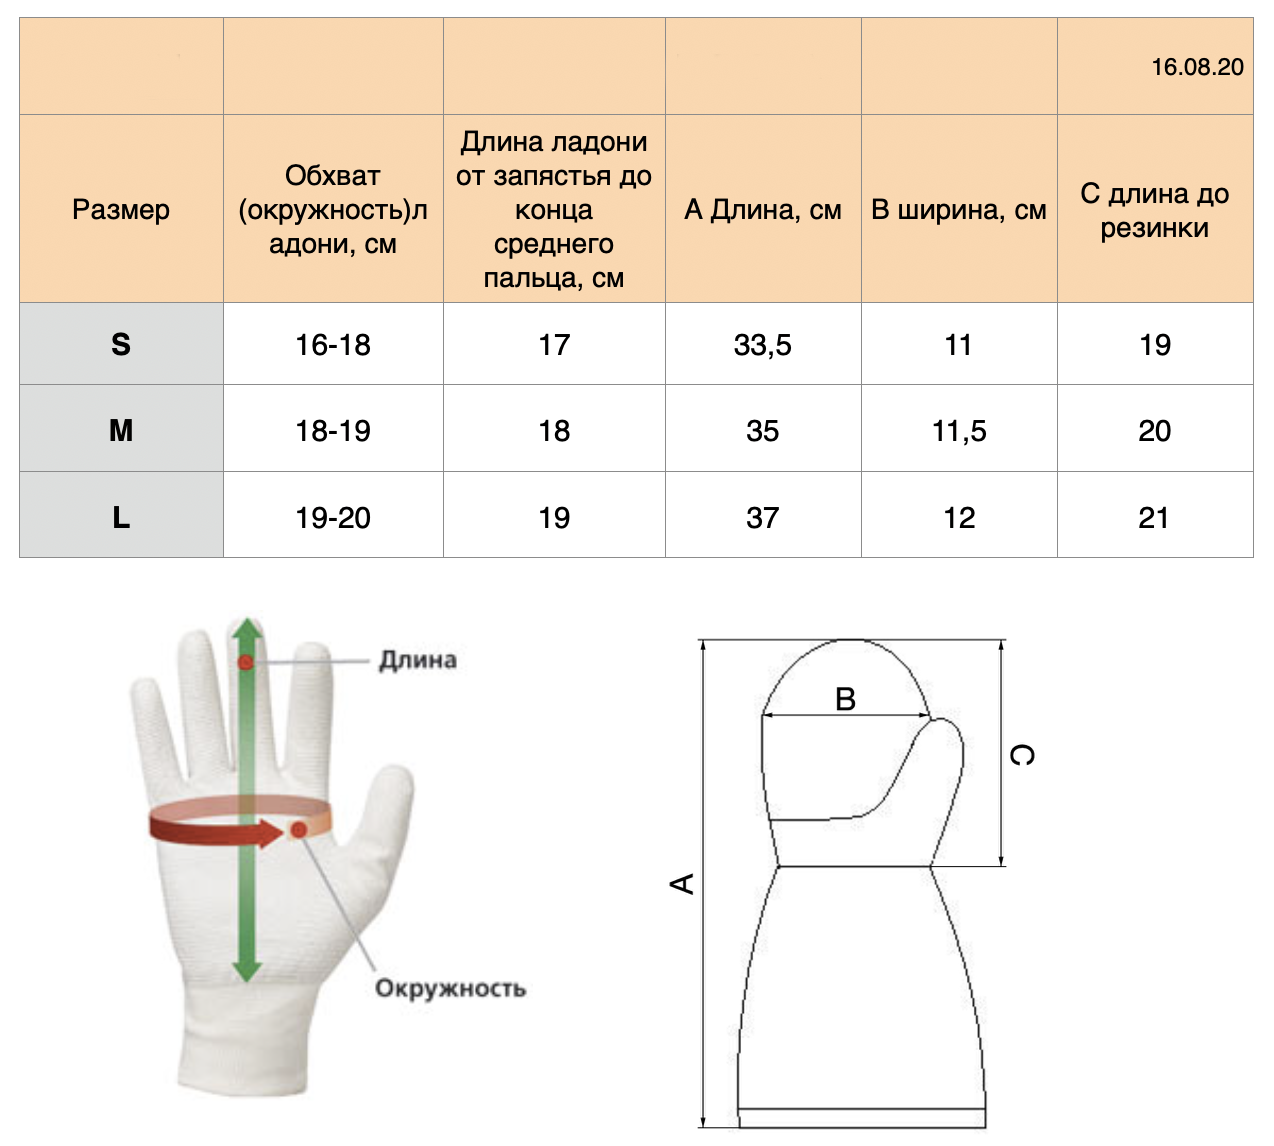 Размеры детских перчаток таблица по возрасту. размеры детских варежек и перчаток — делаем правильный выбор.